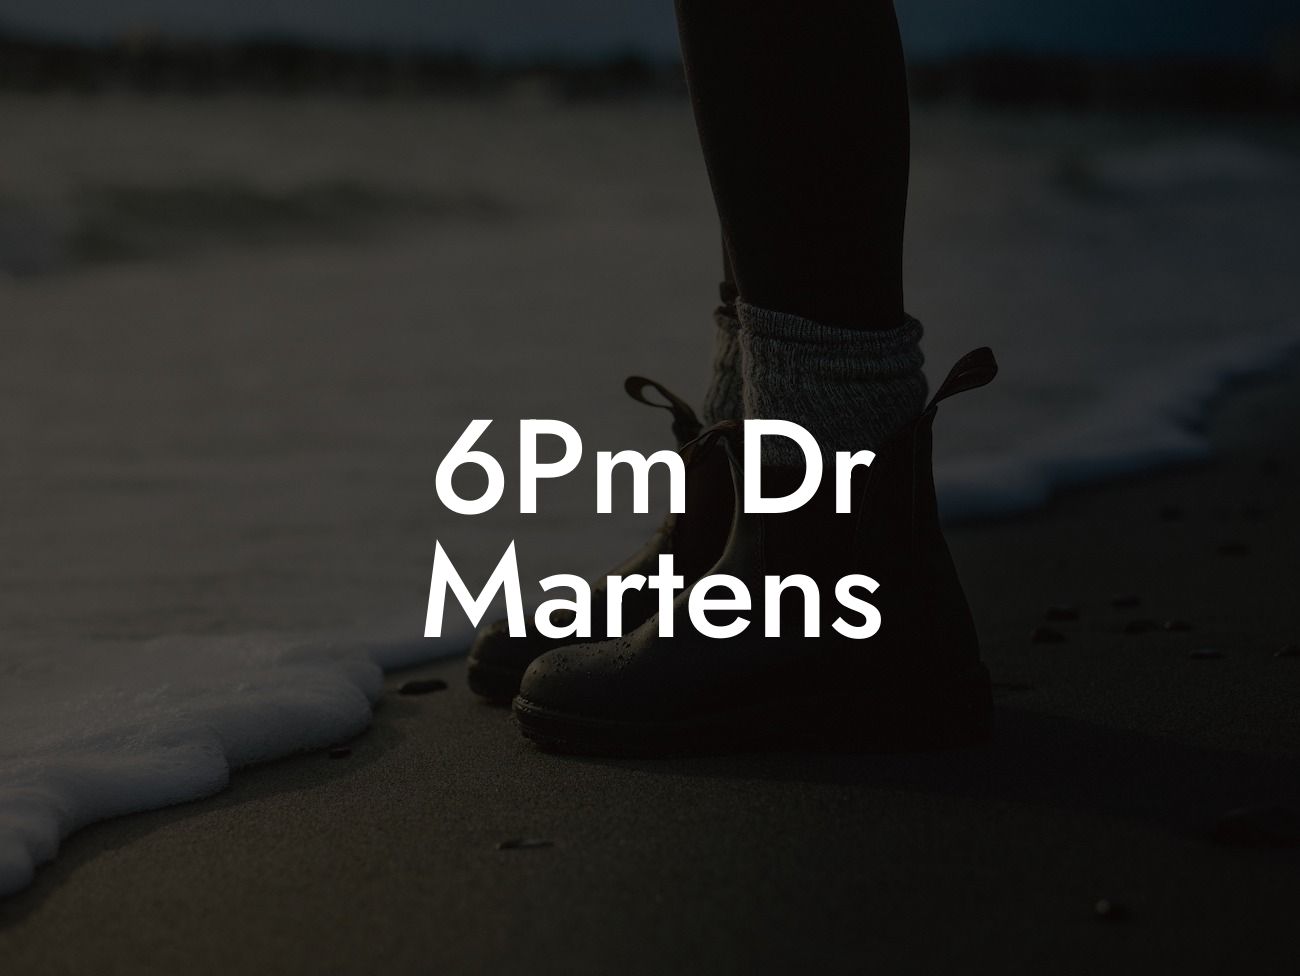 6Pm Dr Martens